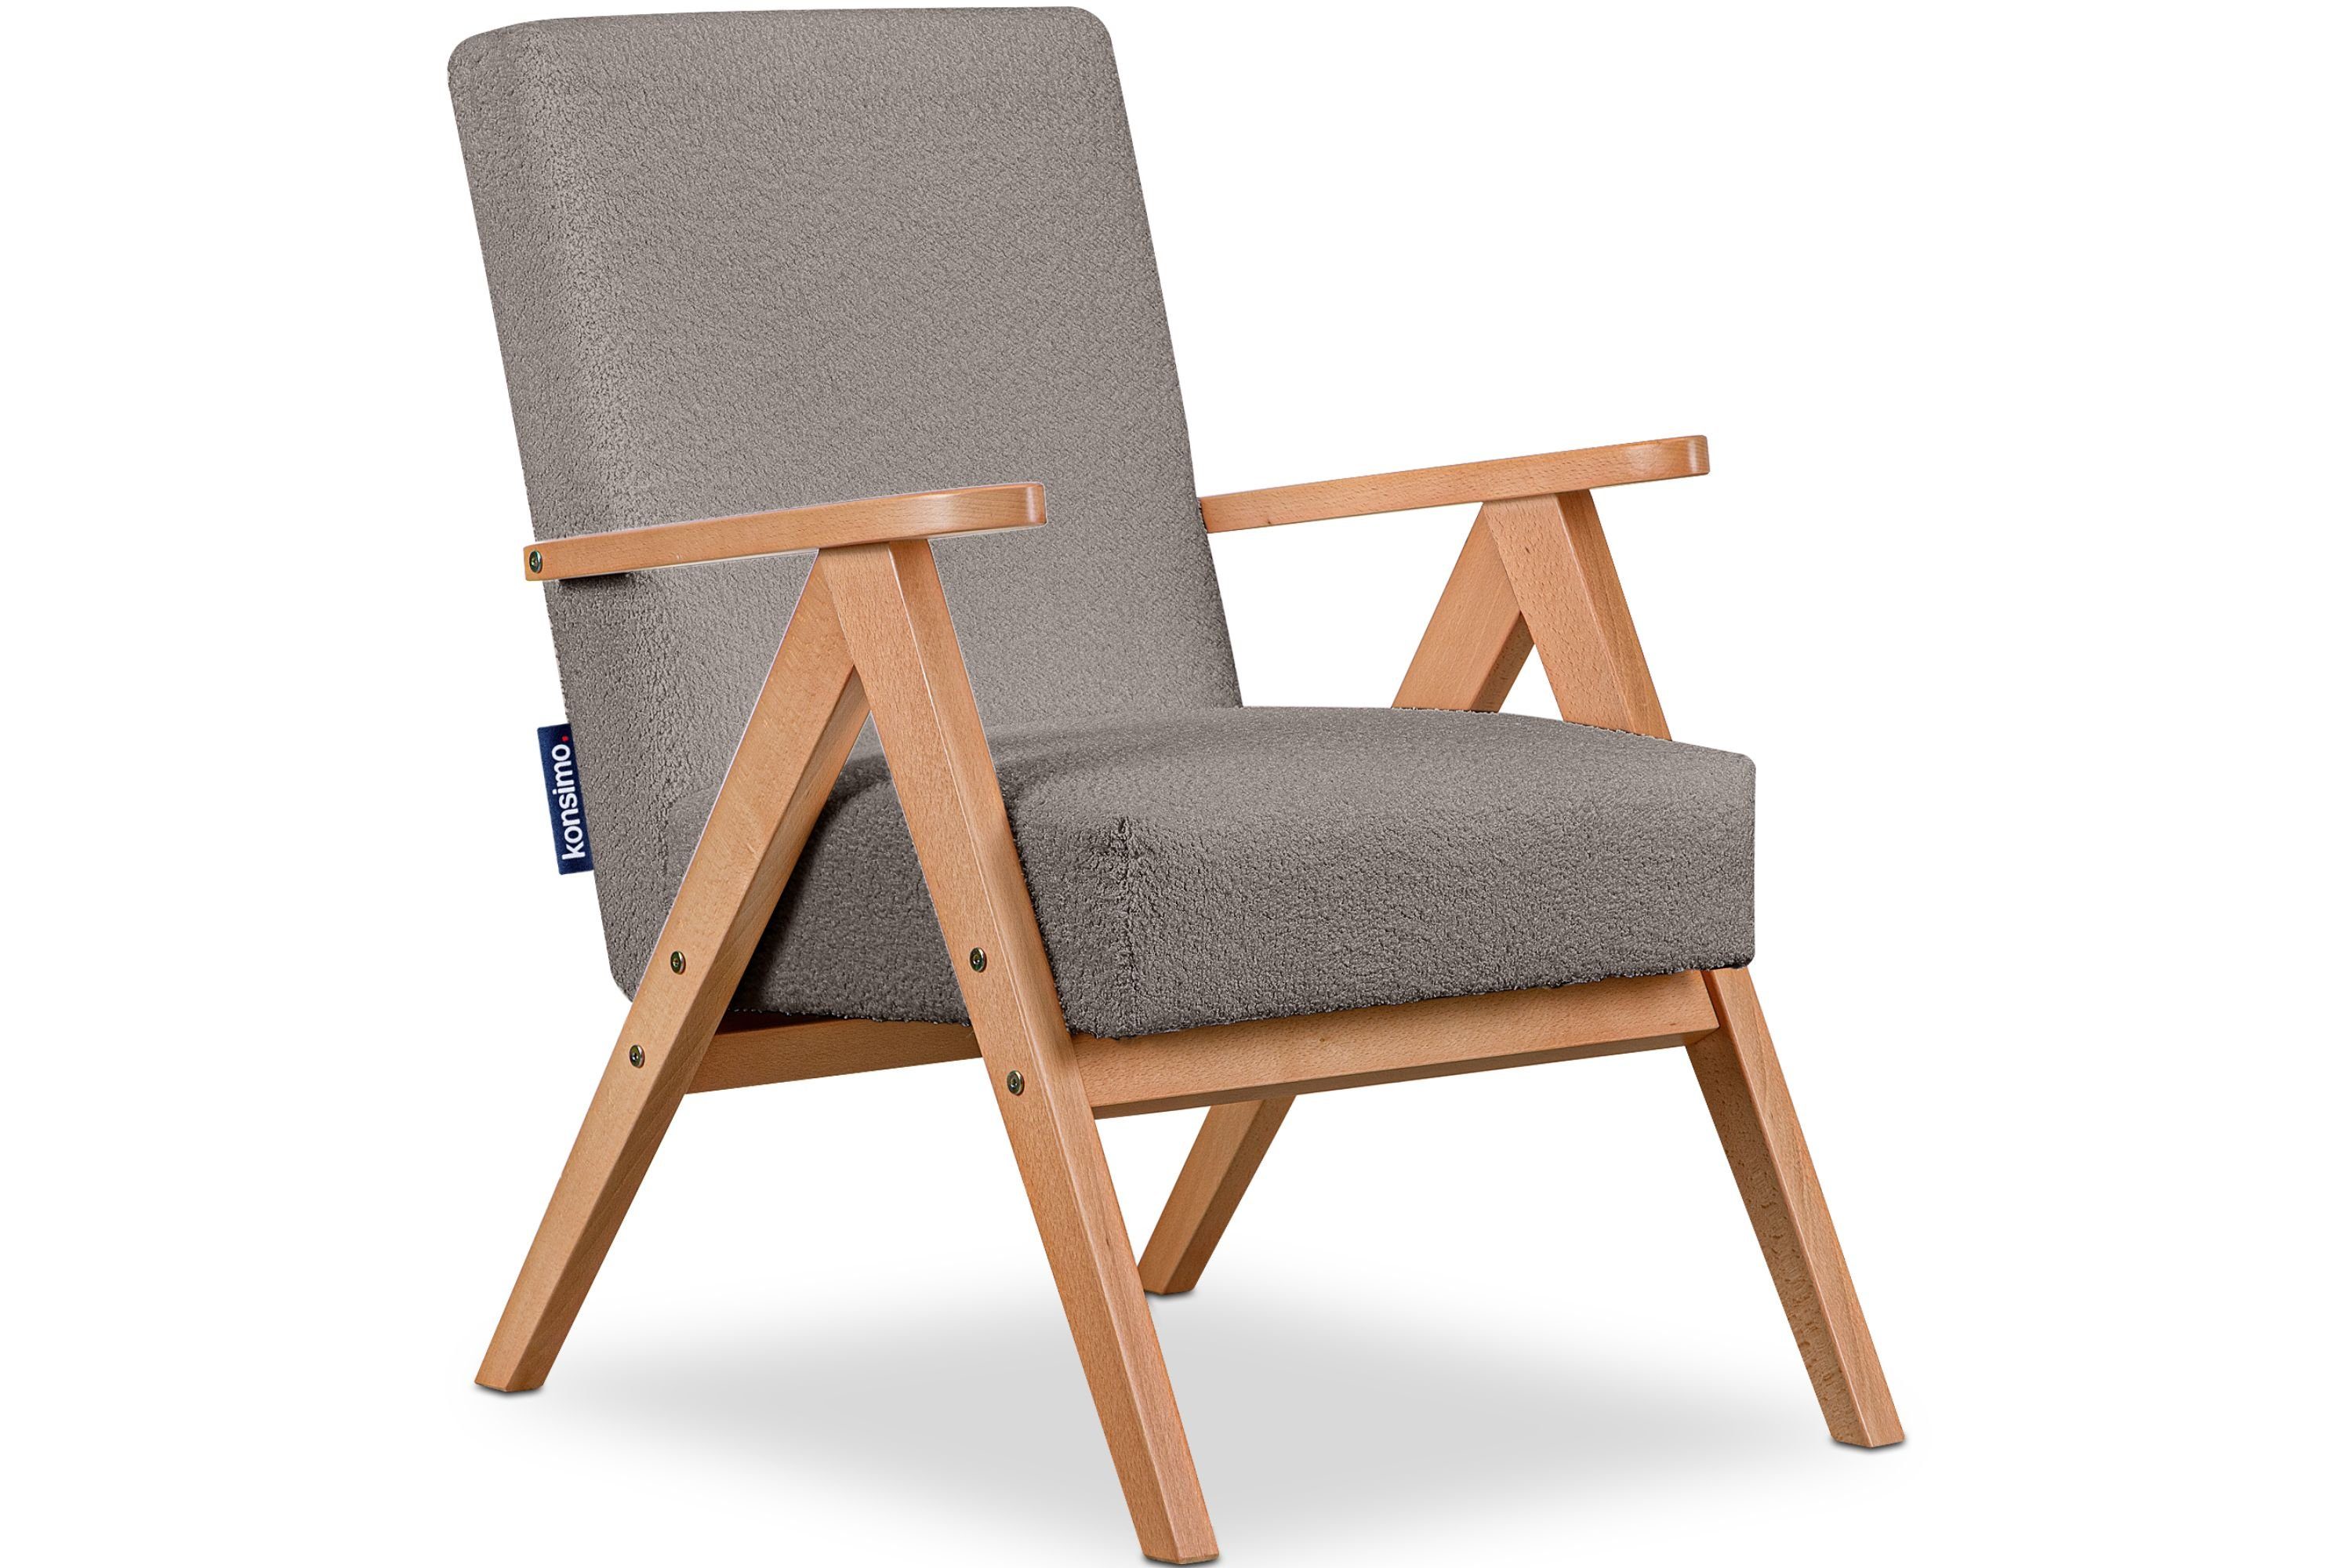 Konsimo Cocktailsessel NASET Sessel, Rahmen aus lackiertem Holz, profilierte Rückenlehne